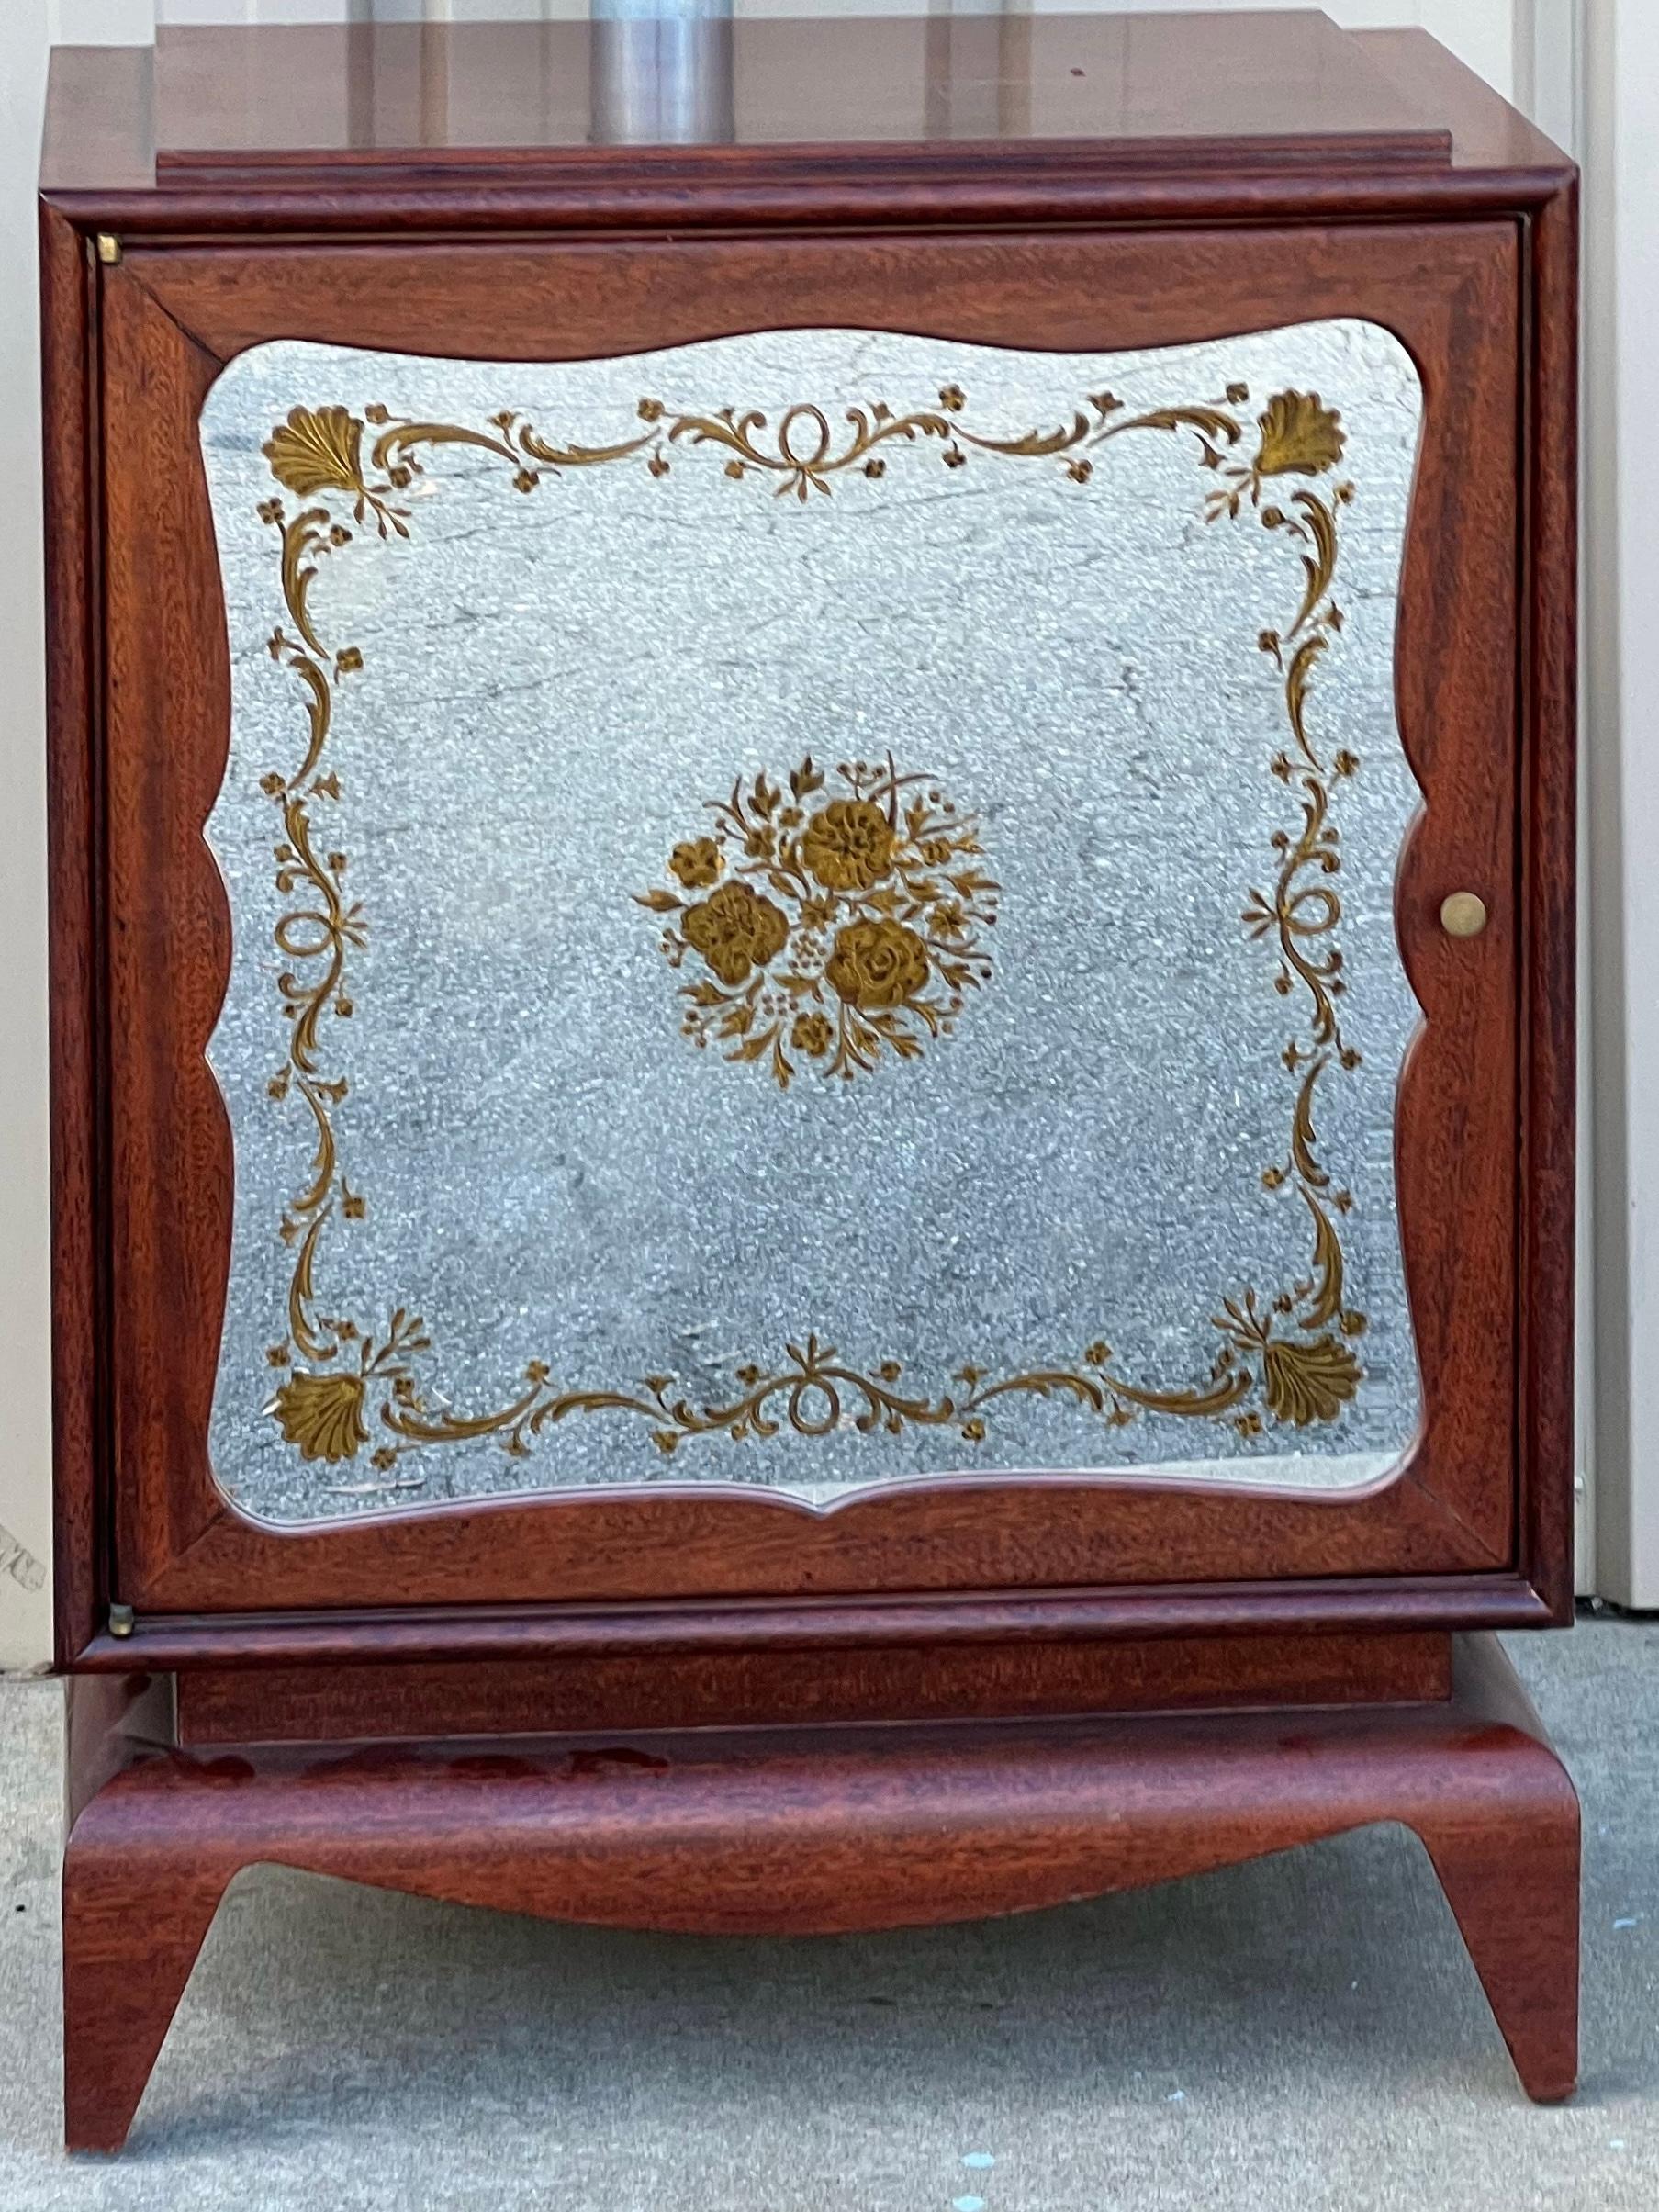 Dies ist ein Paar verspiegelter Mahagonischränke mit Hinterglasmalerei, die dem Haus Grosfeld zugeschrieben werden. Zunächst ist zu bemerken, dass der Spiegel in einwandfreiem Zustand ist und lediglich die Außenseite reflektiert. Der Korpus ist aus